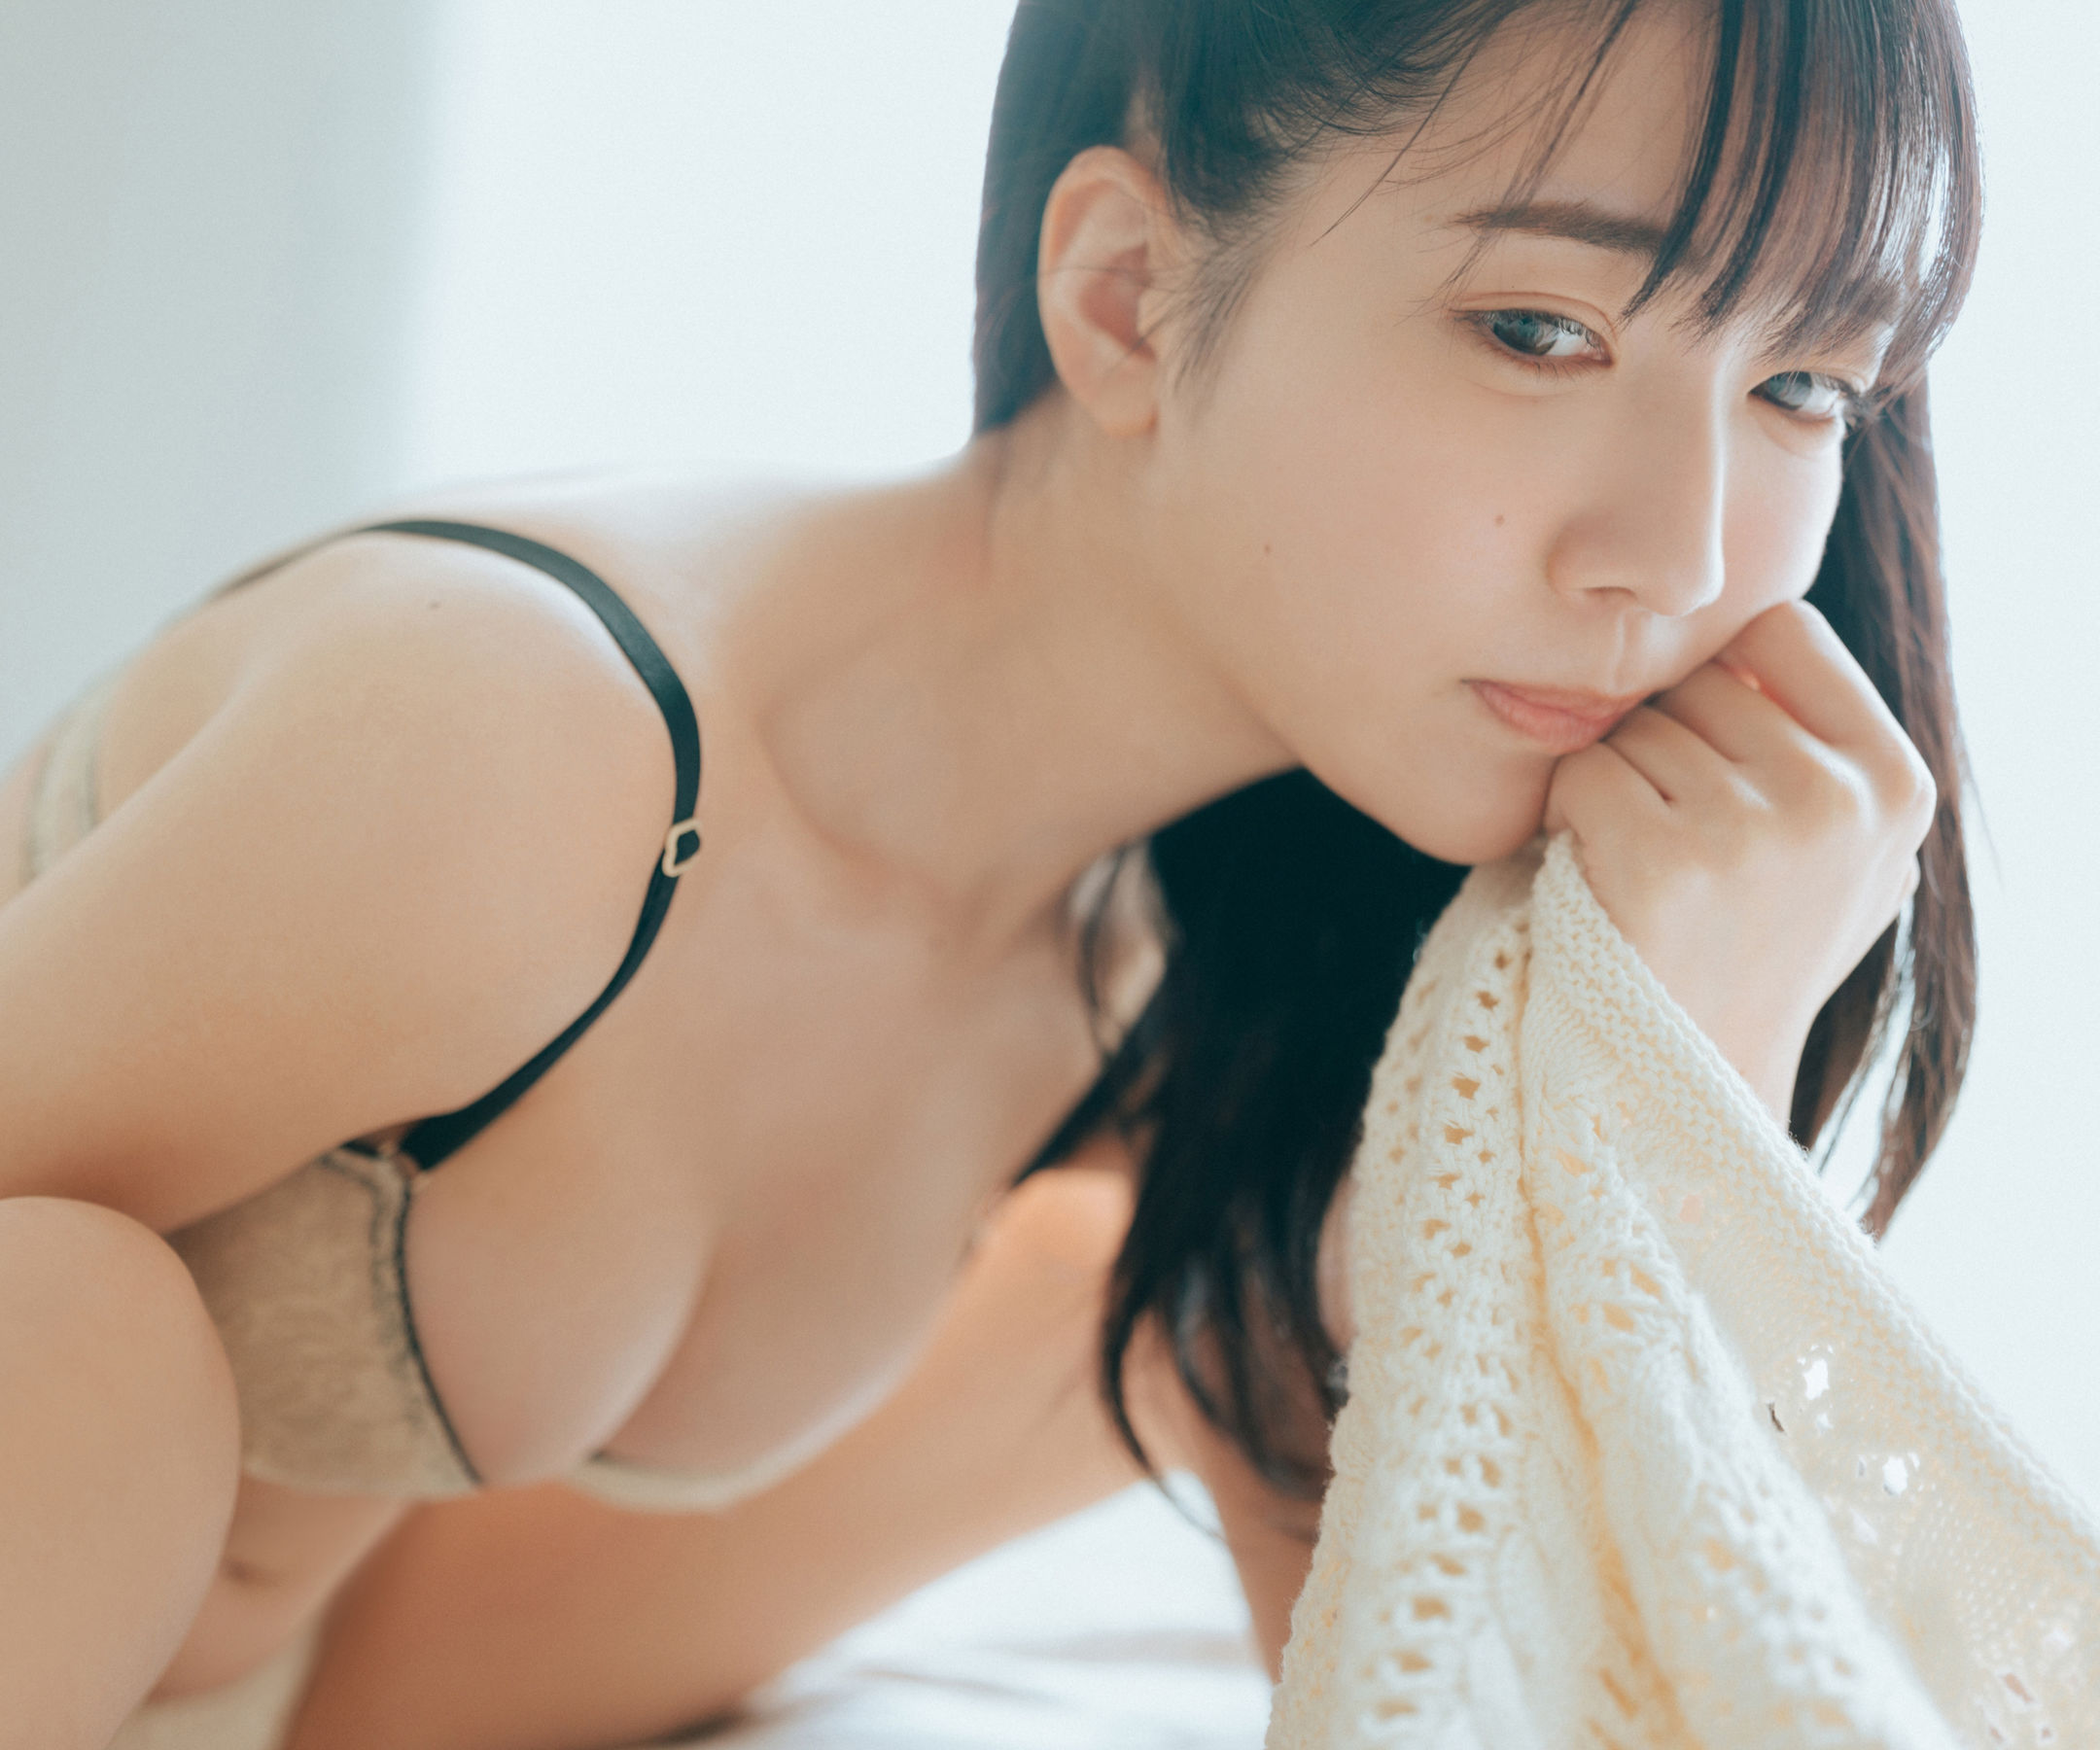 Kisumi Amau 天羽希純 - I can't wait 待ちきれない/(50P)